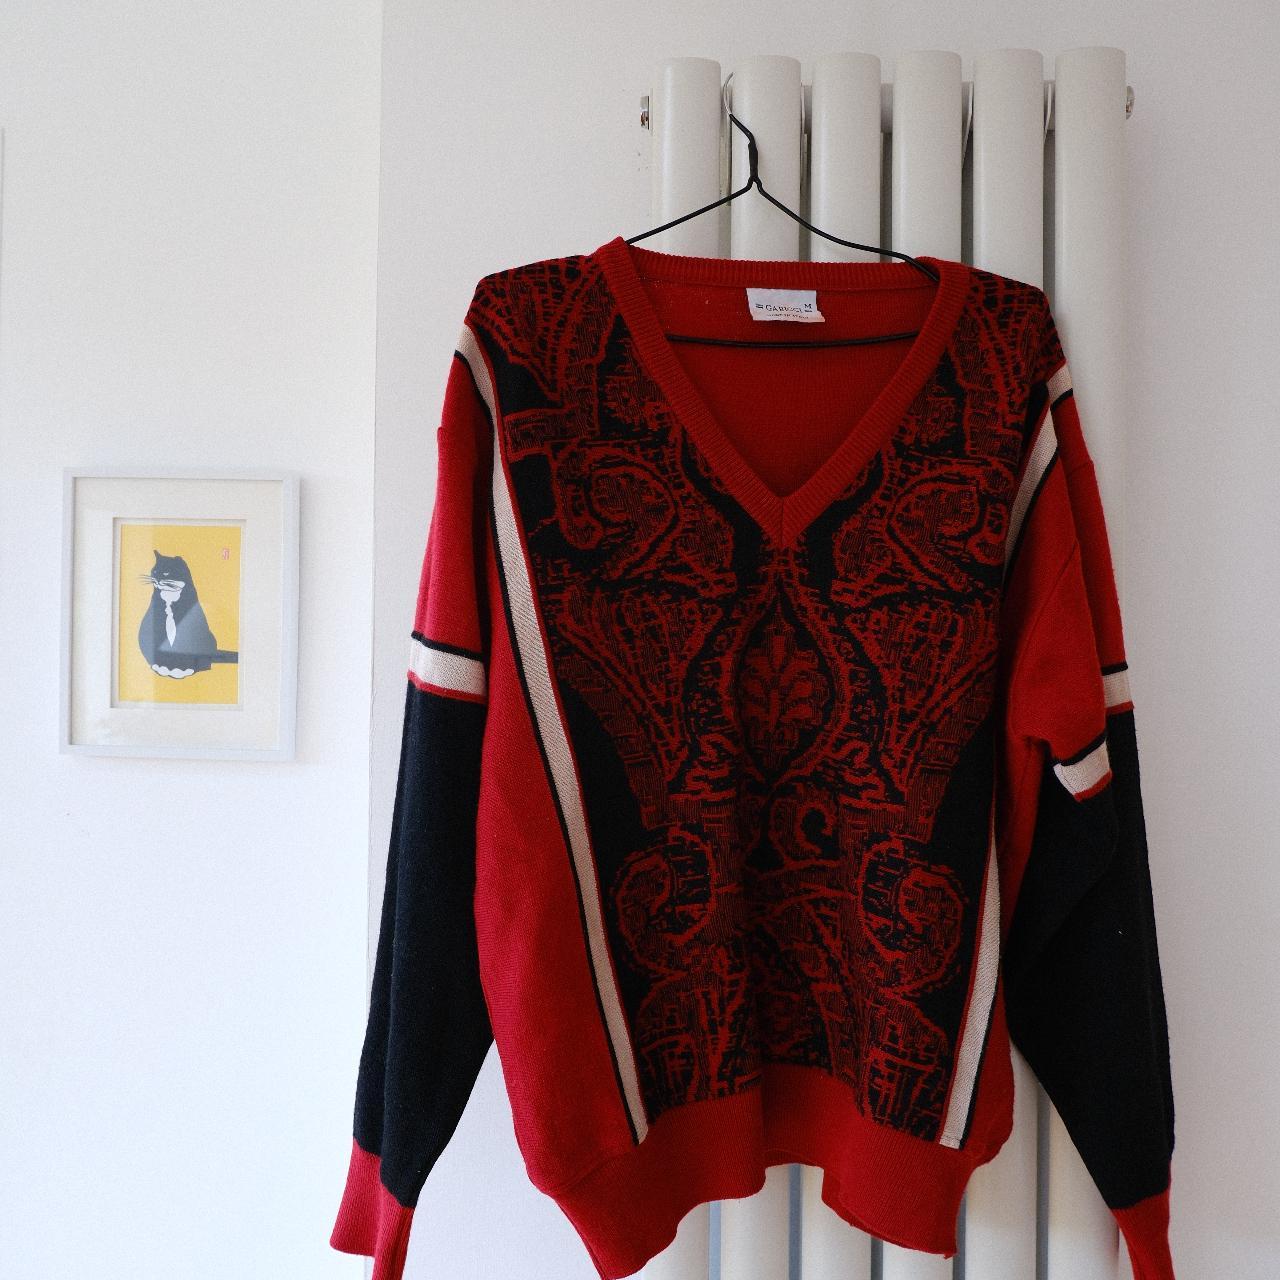 Lovely vintage Gabicci red v-neck jumper - size... - Depop